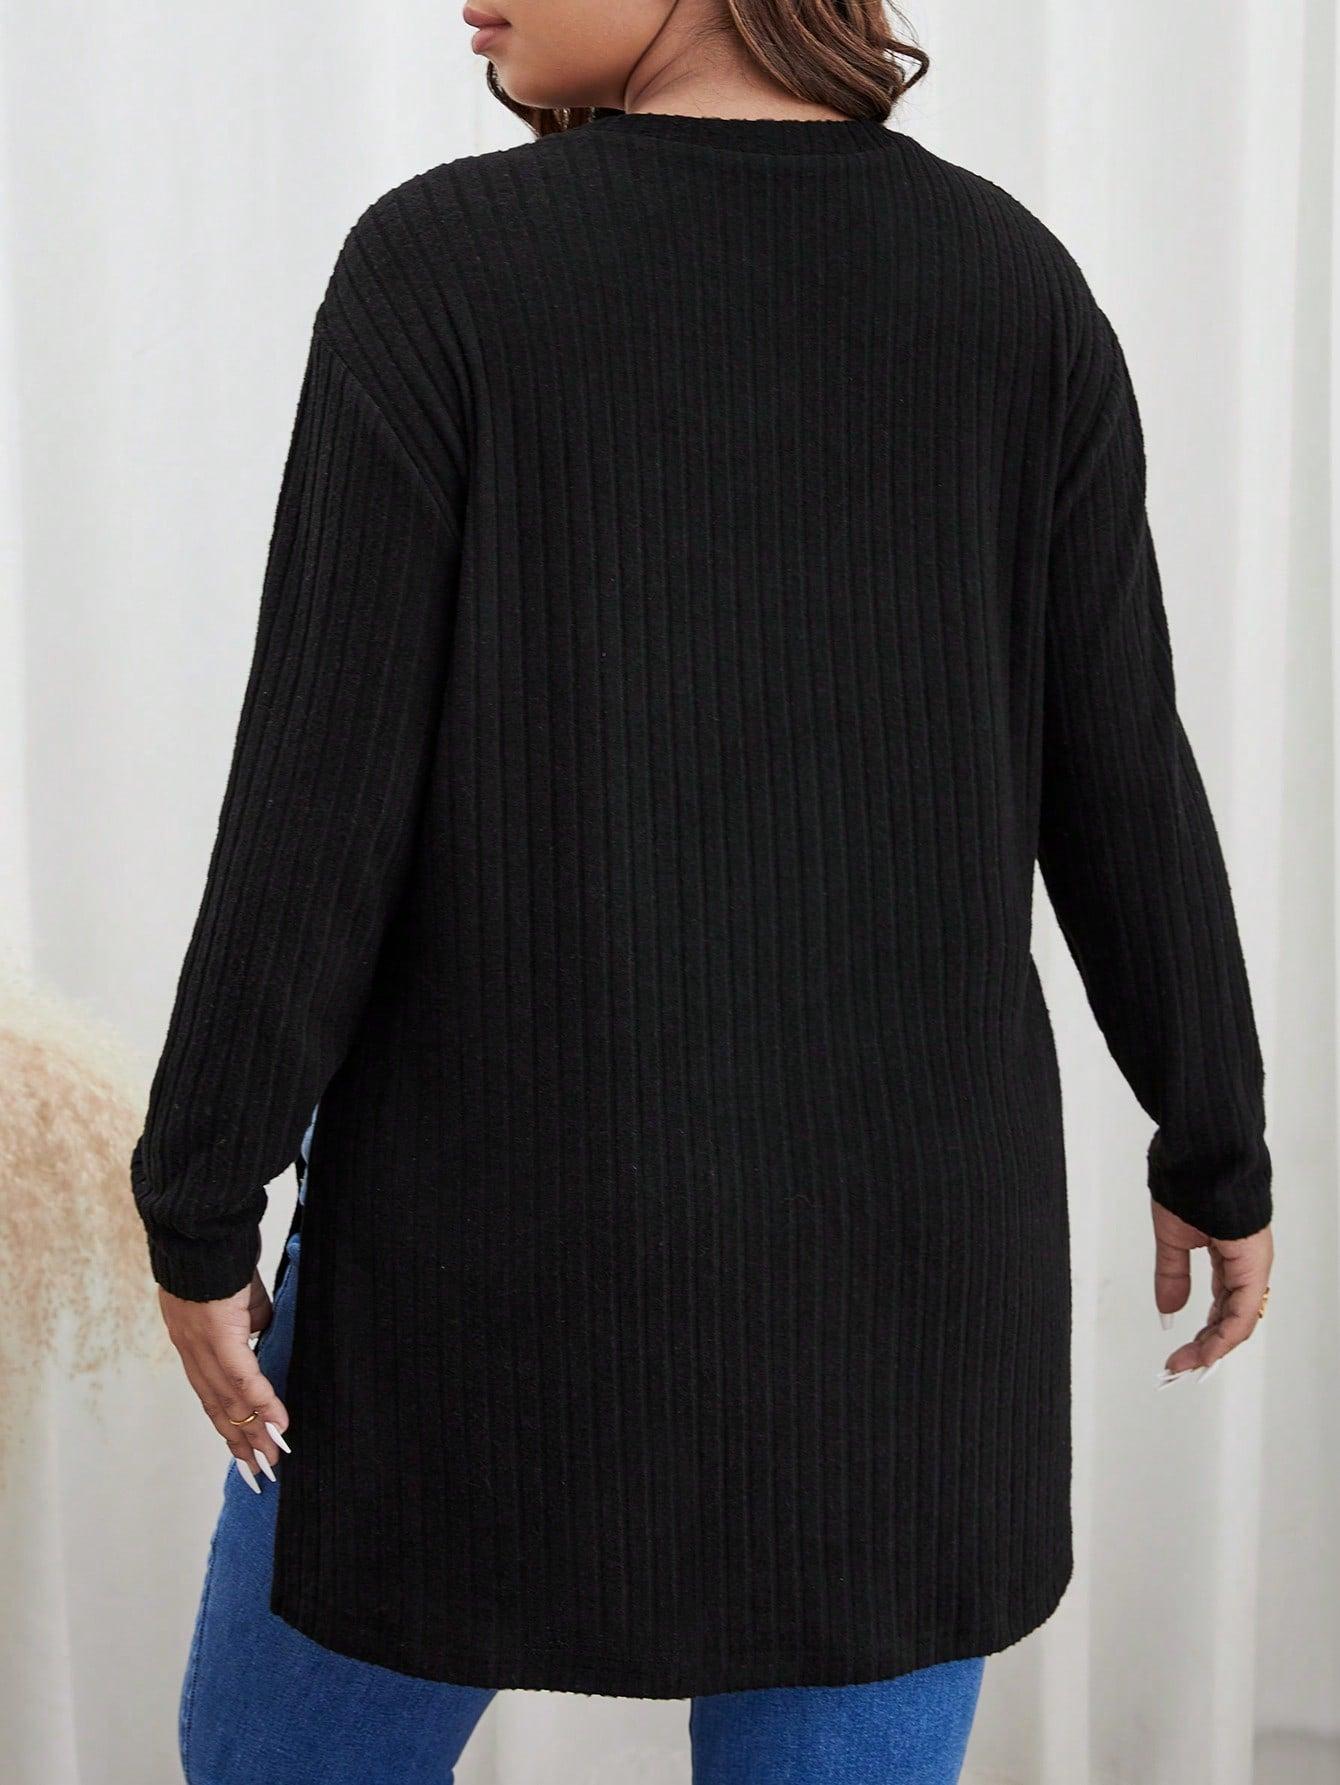 czarny sweter prążki długi rękaw